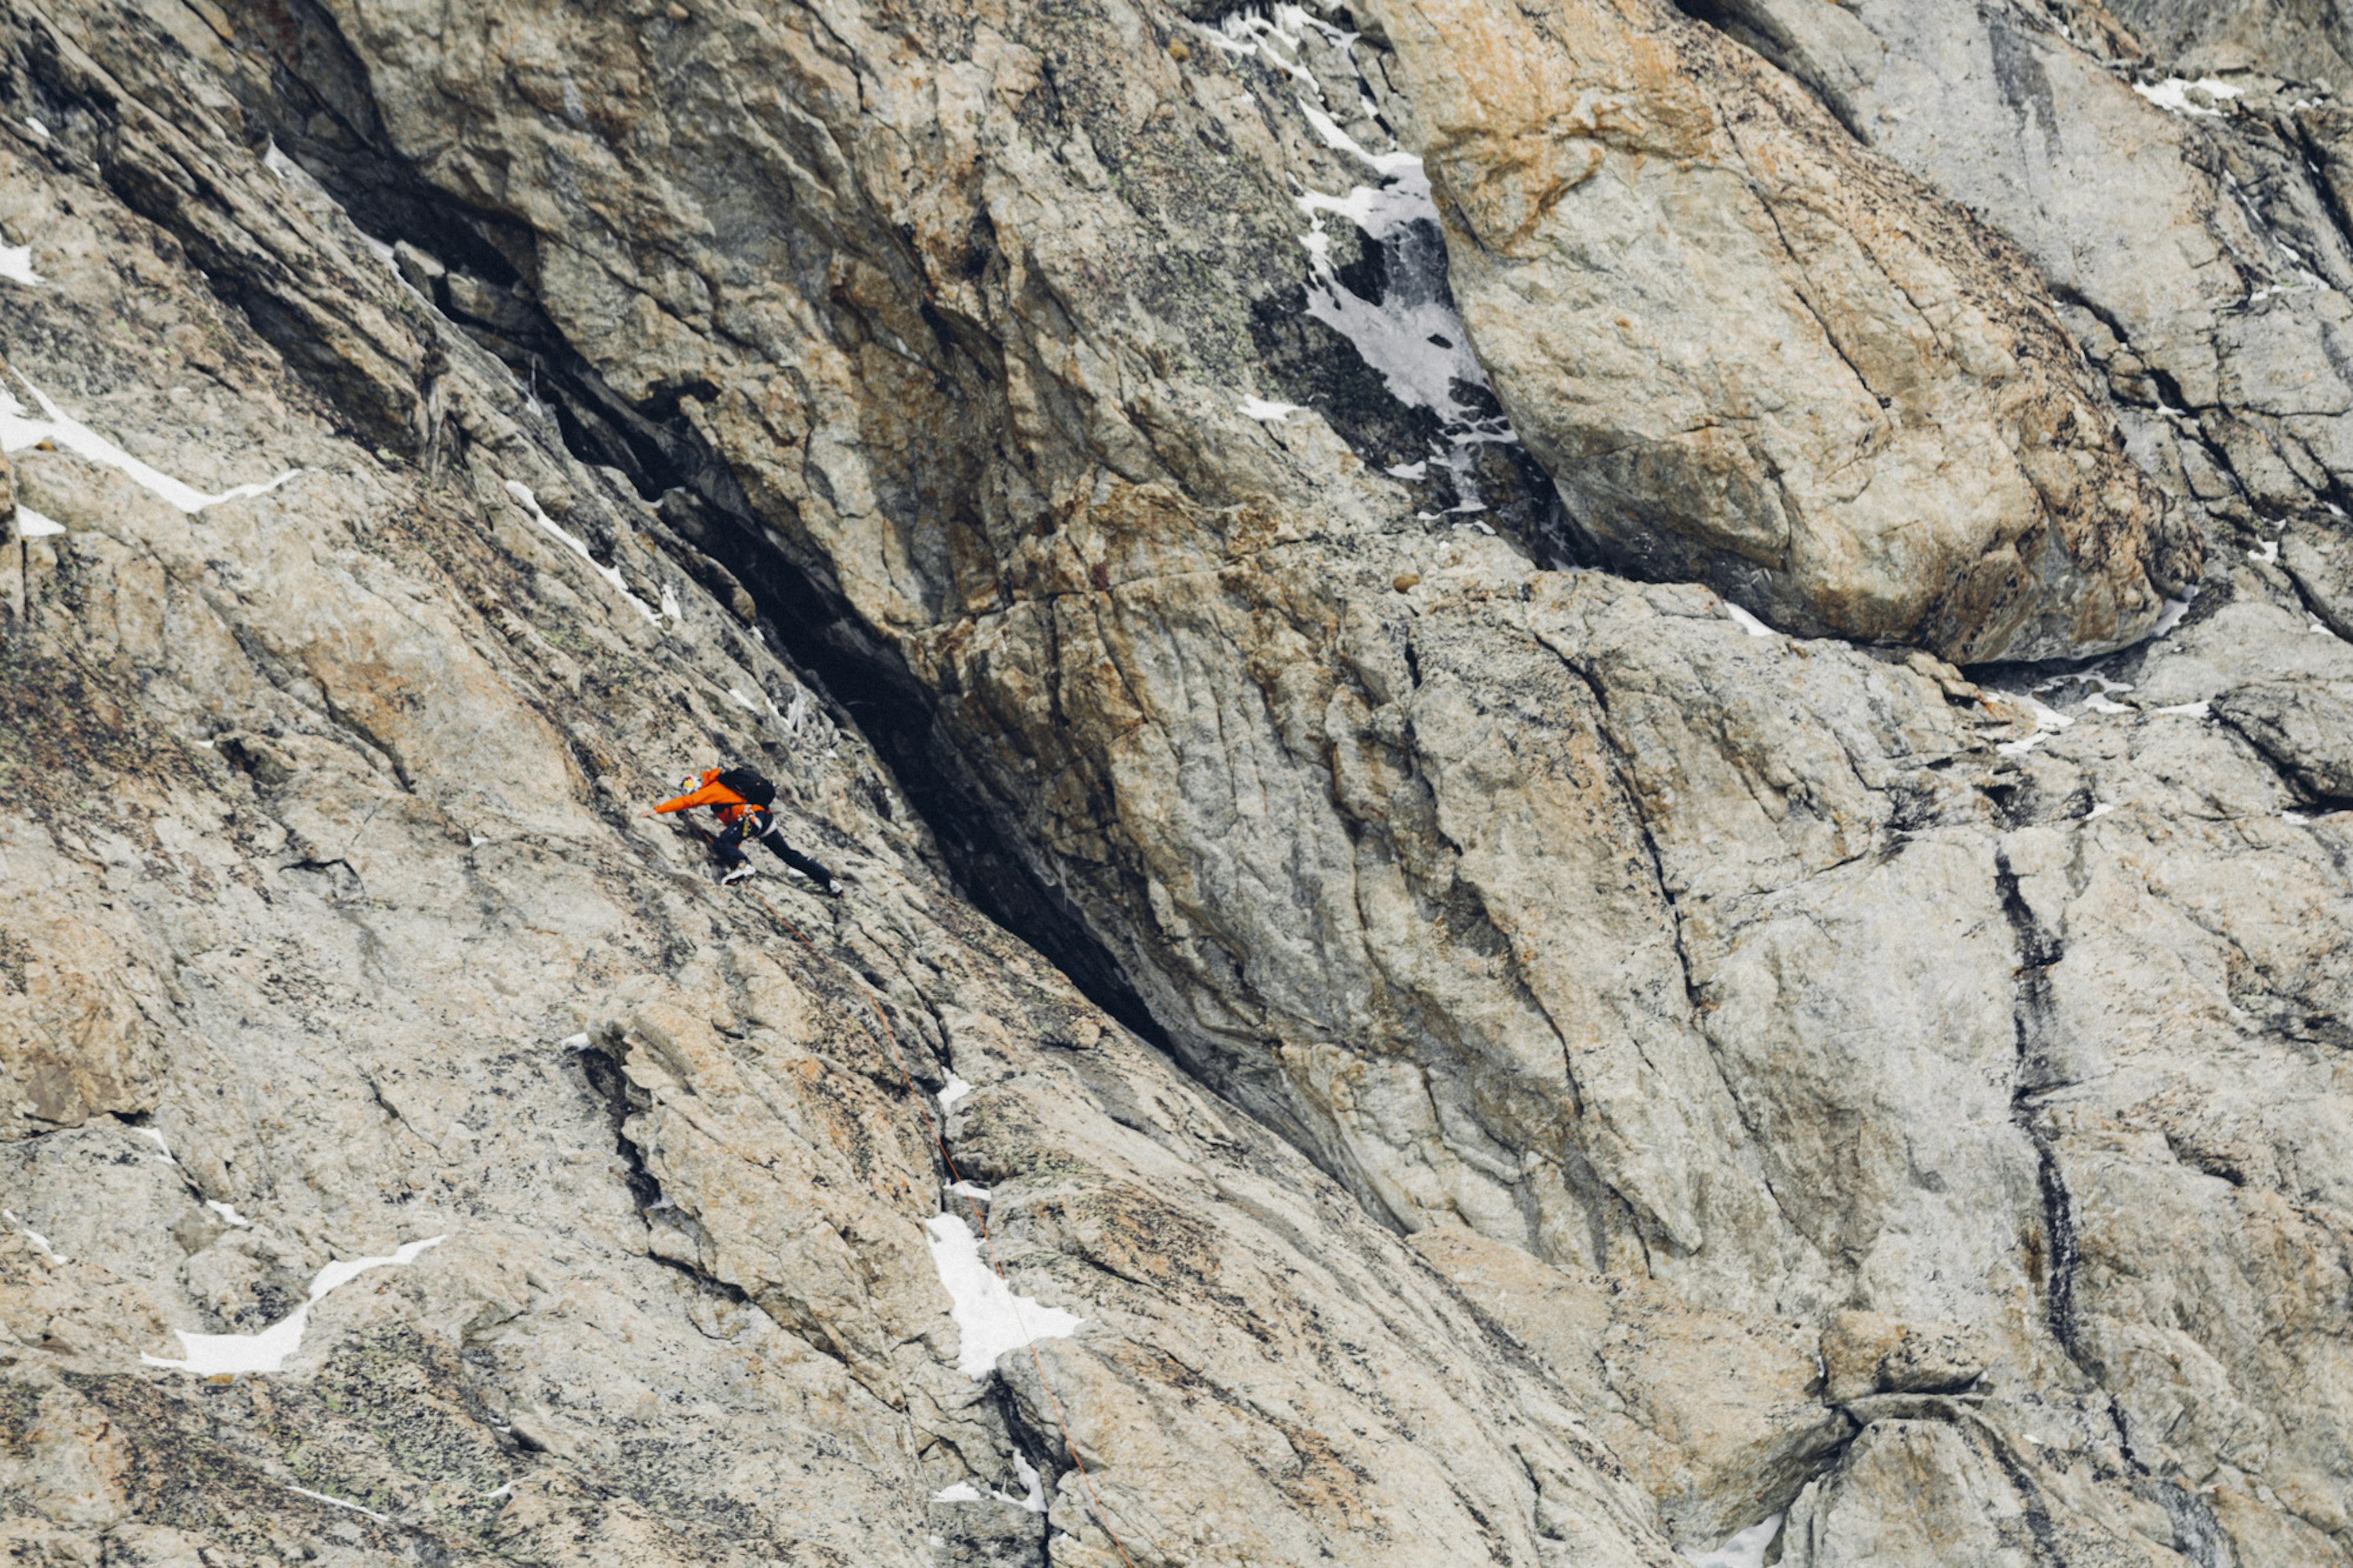 Nico Hojac klettert eine Steinwand hoch.